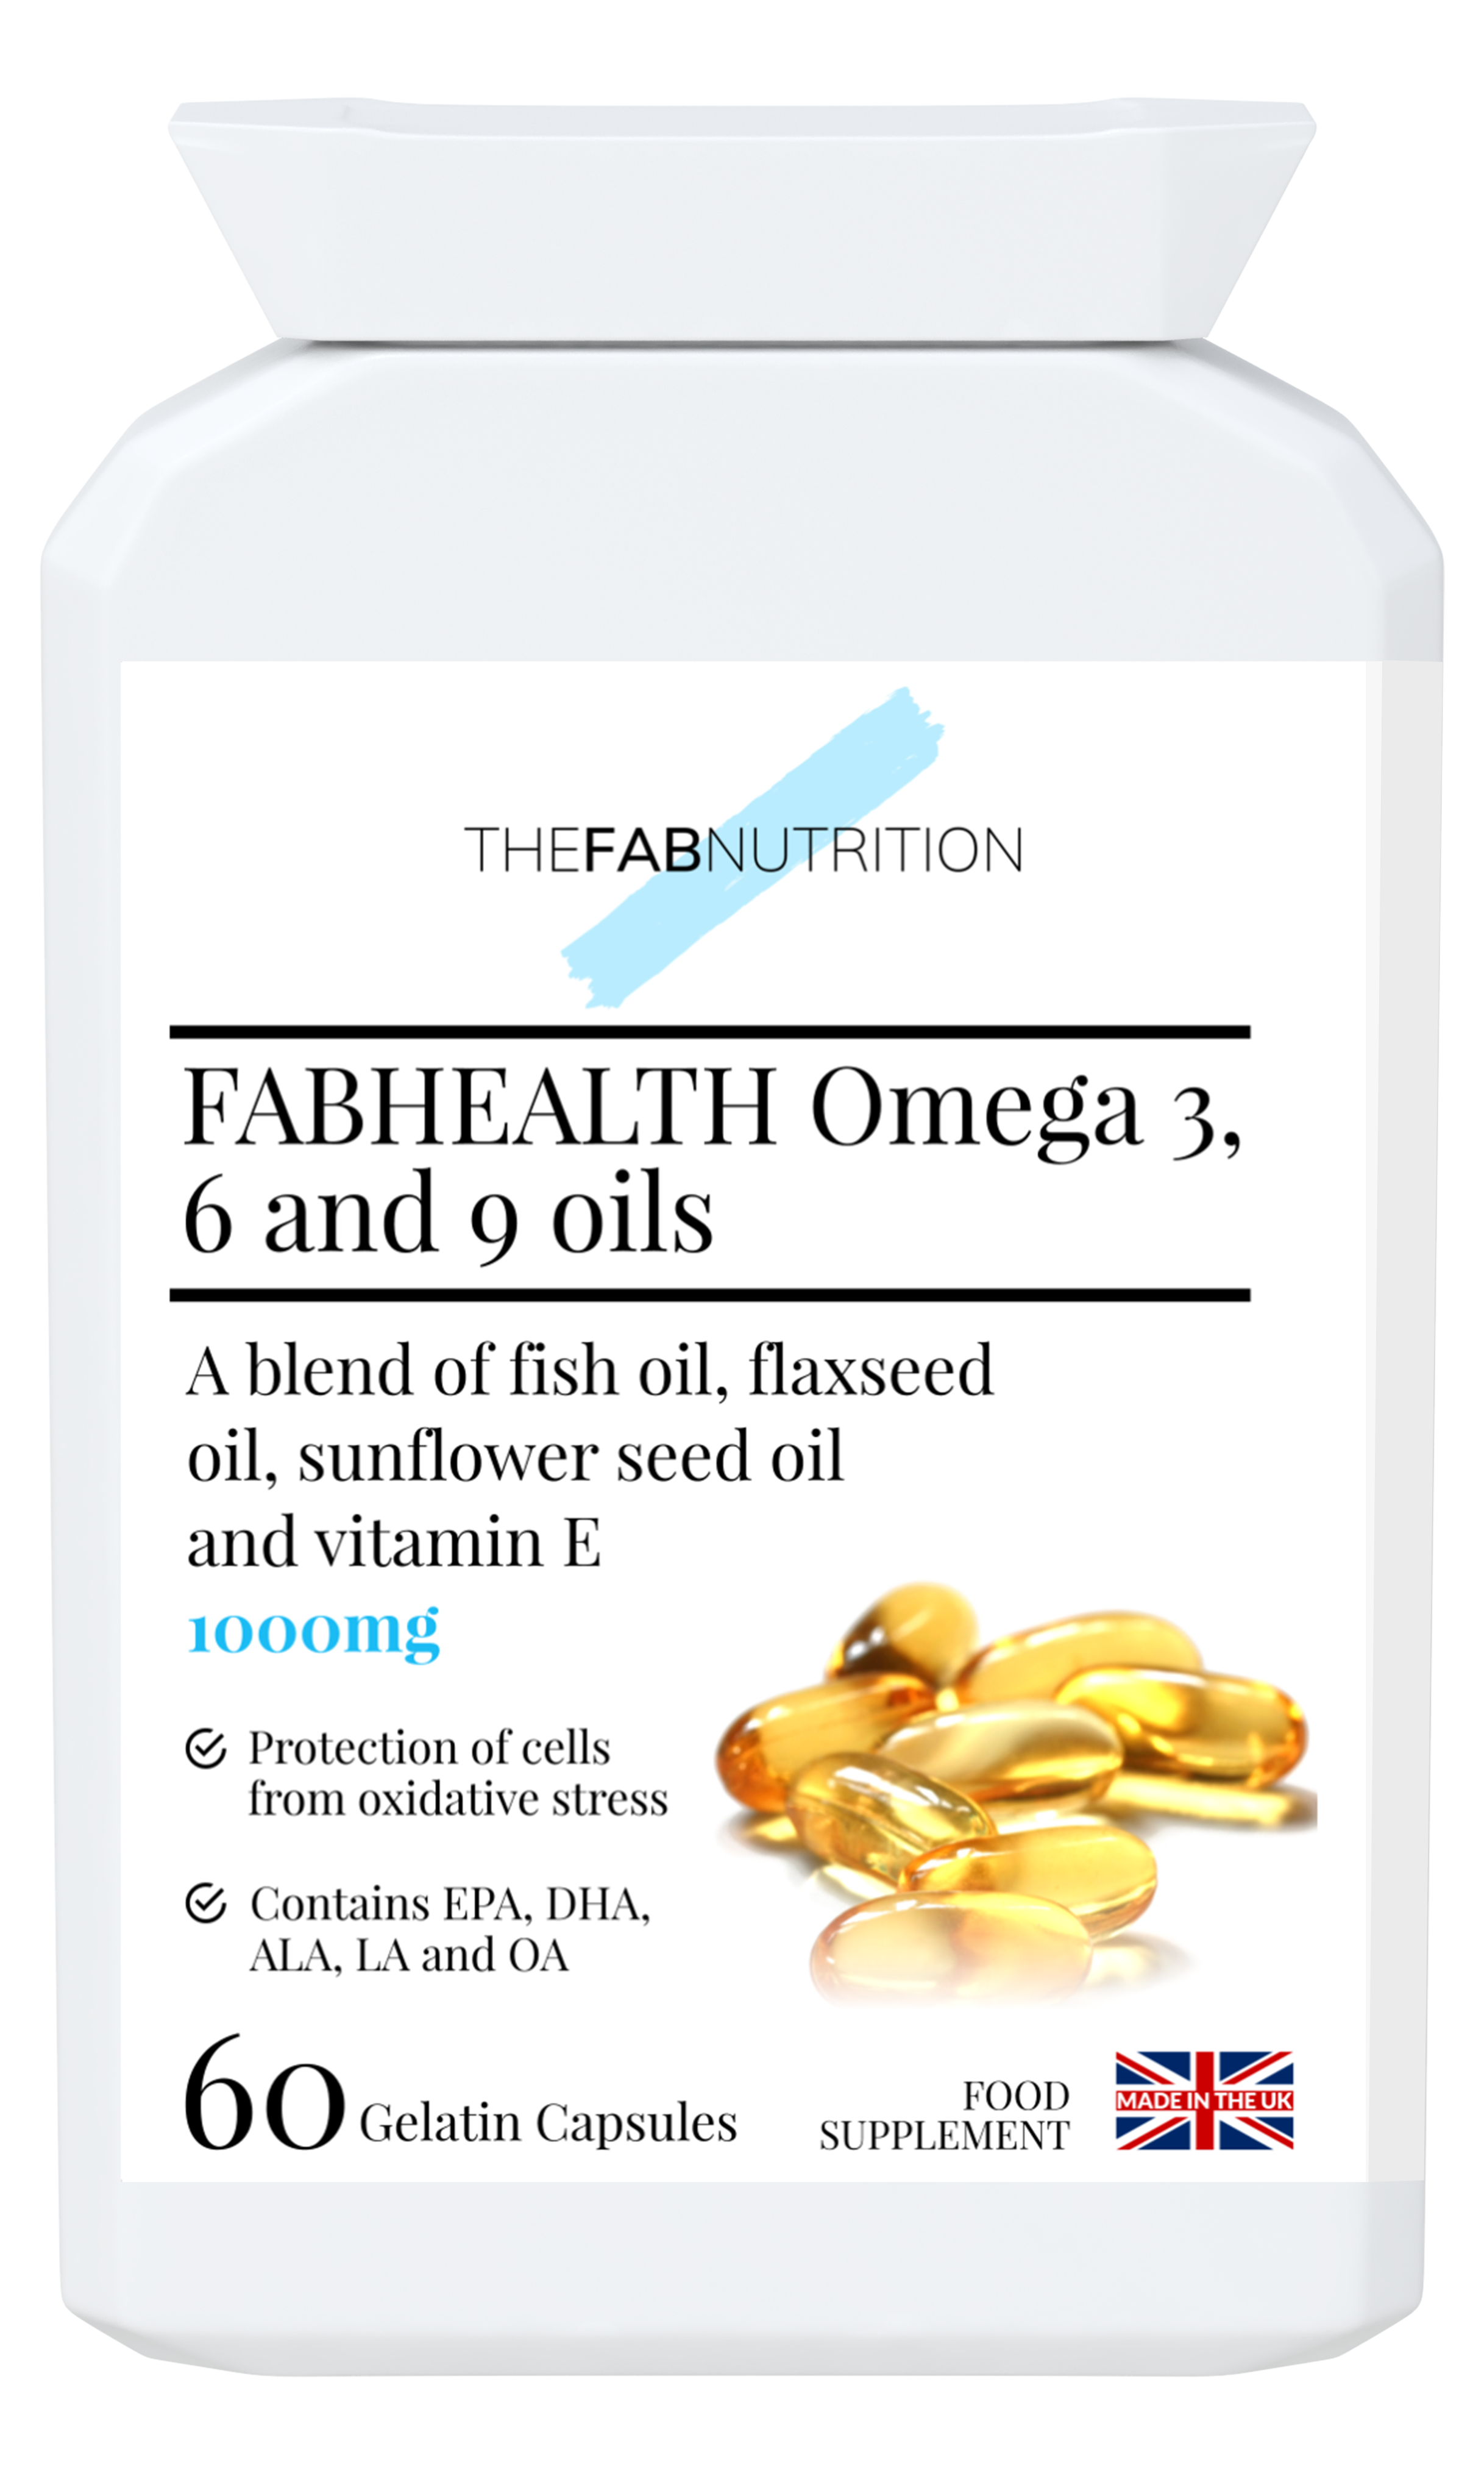 FABHEALTH Omega 3,6 and 9 Oils.